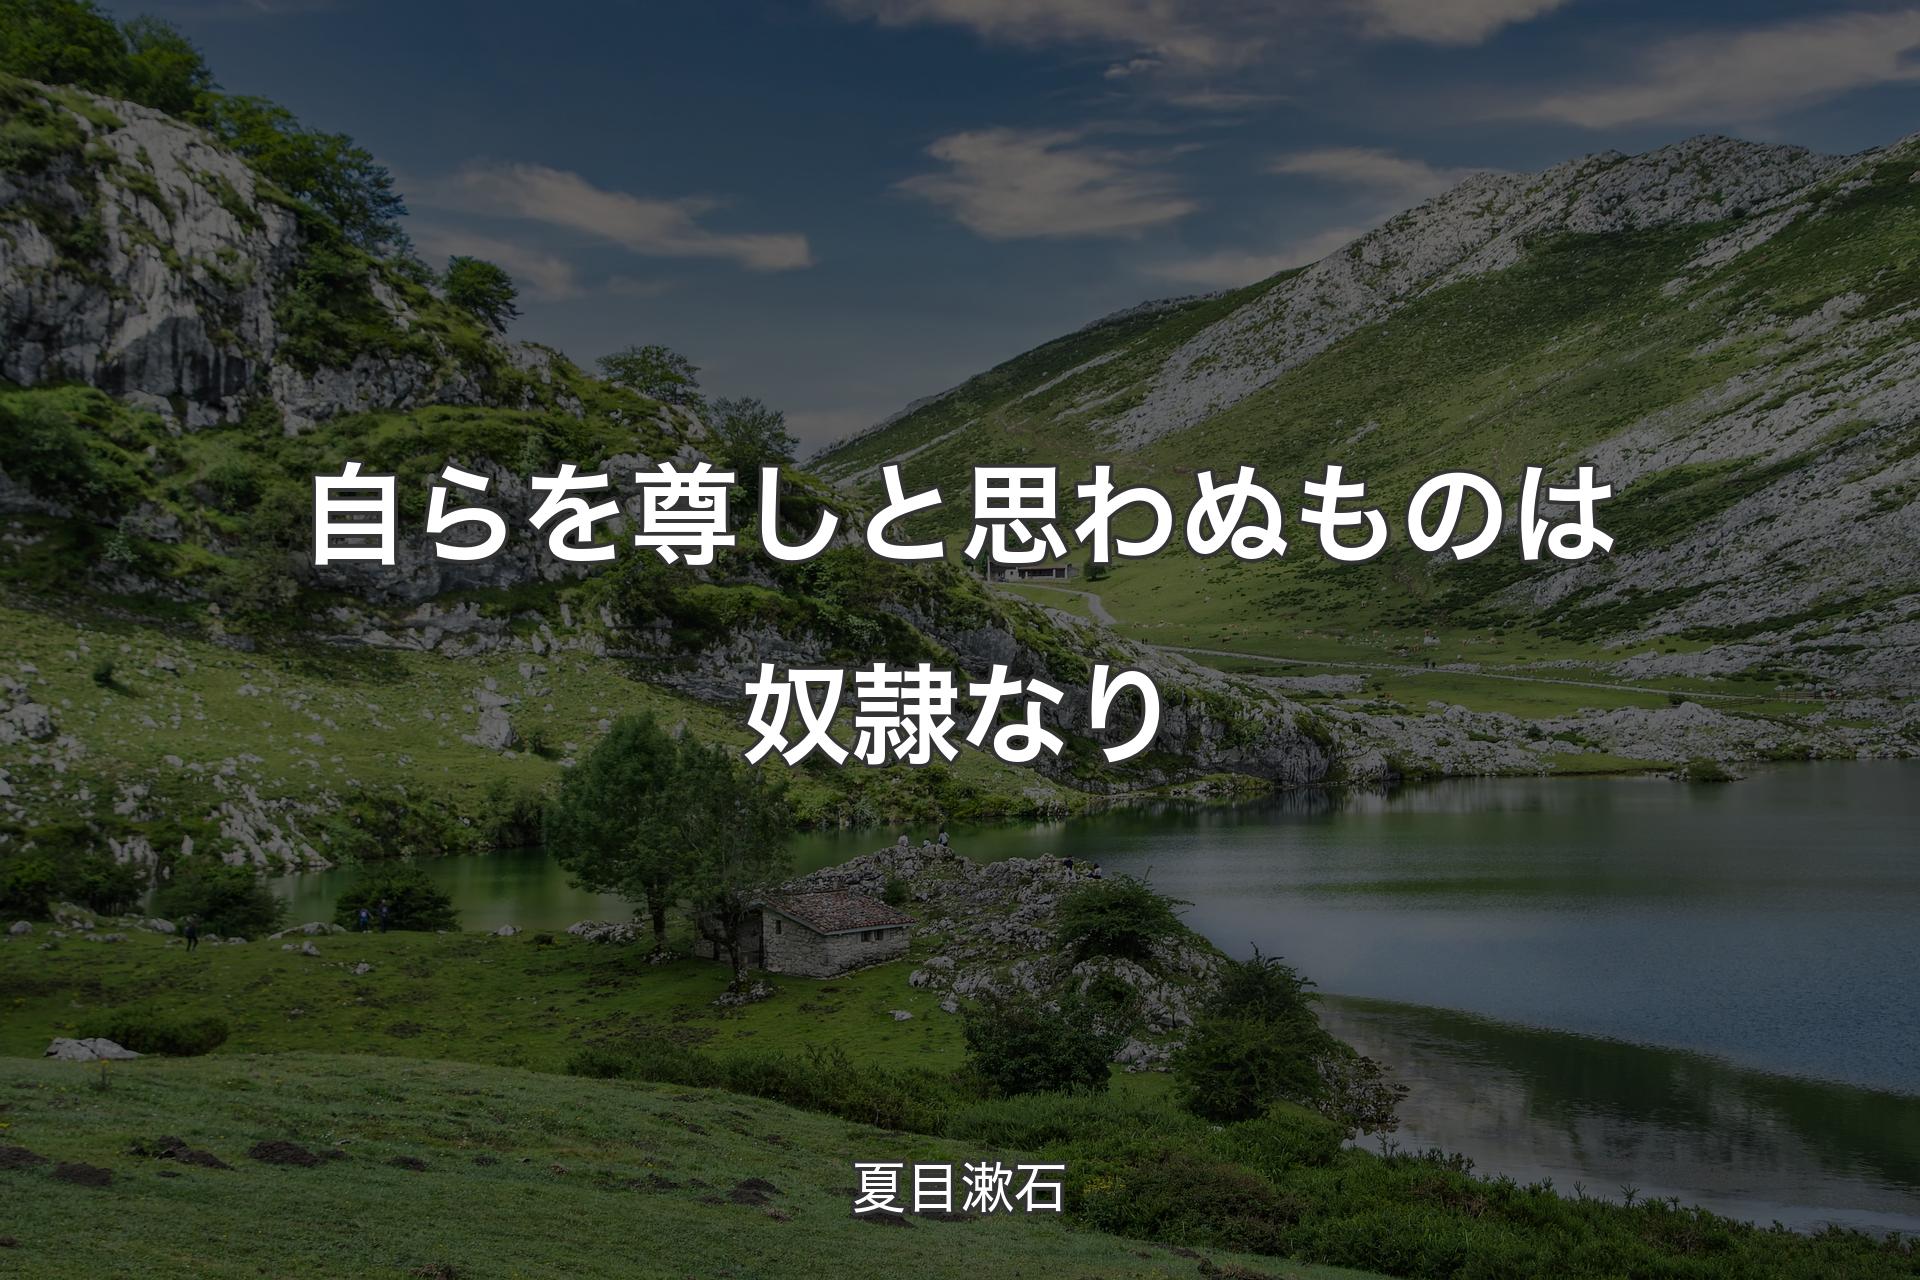 【背景1】自らを尊しと思わぬものは奴隷なり - 夏目漱石